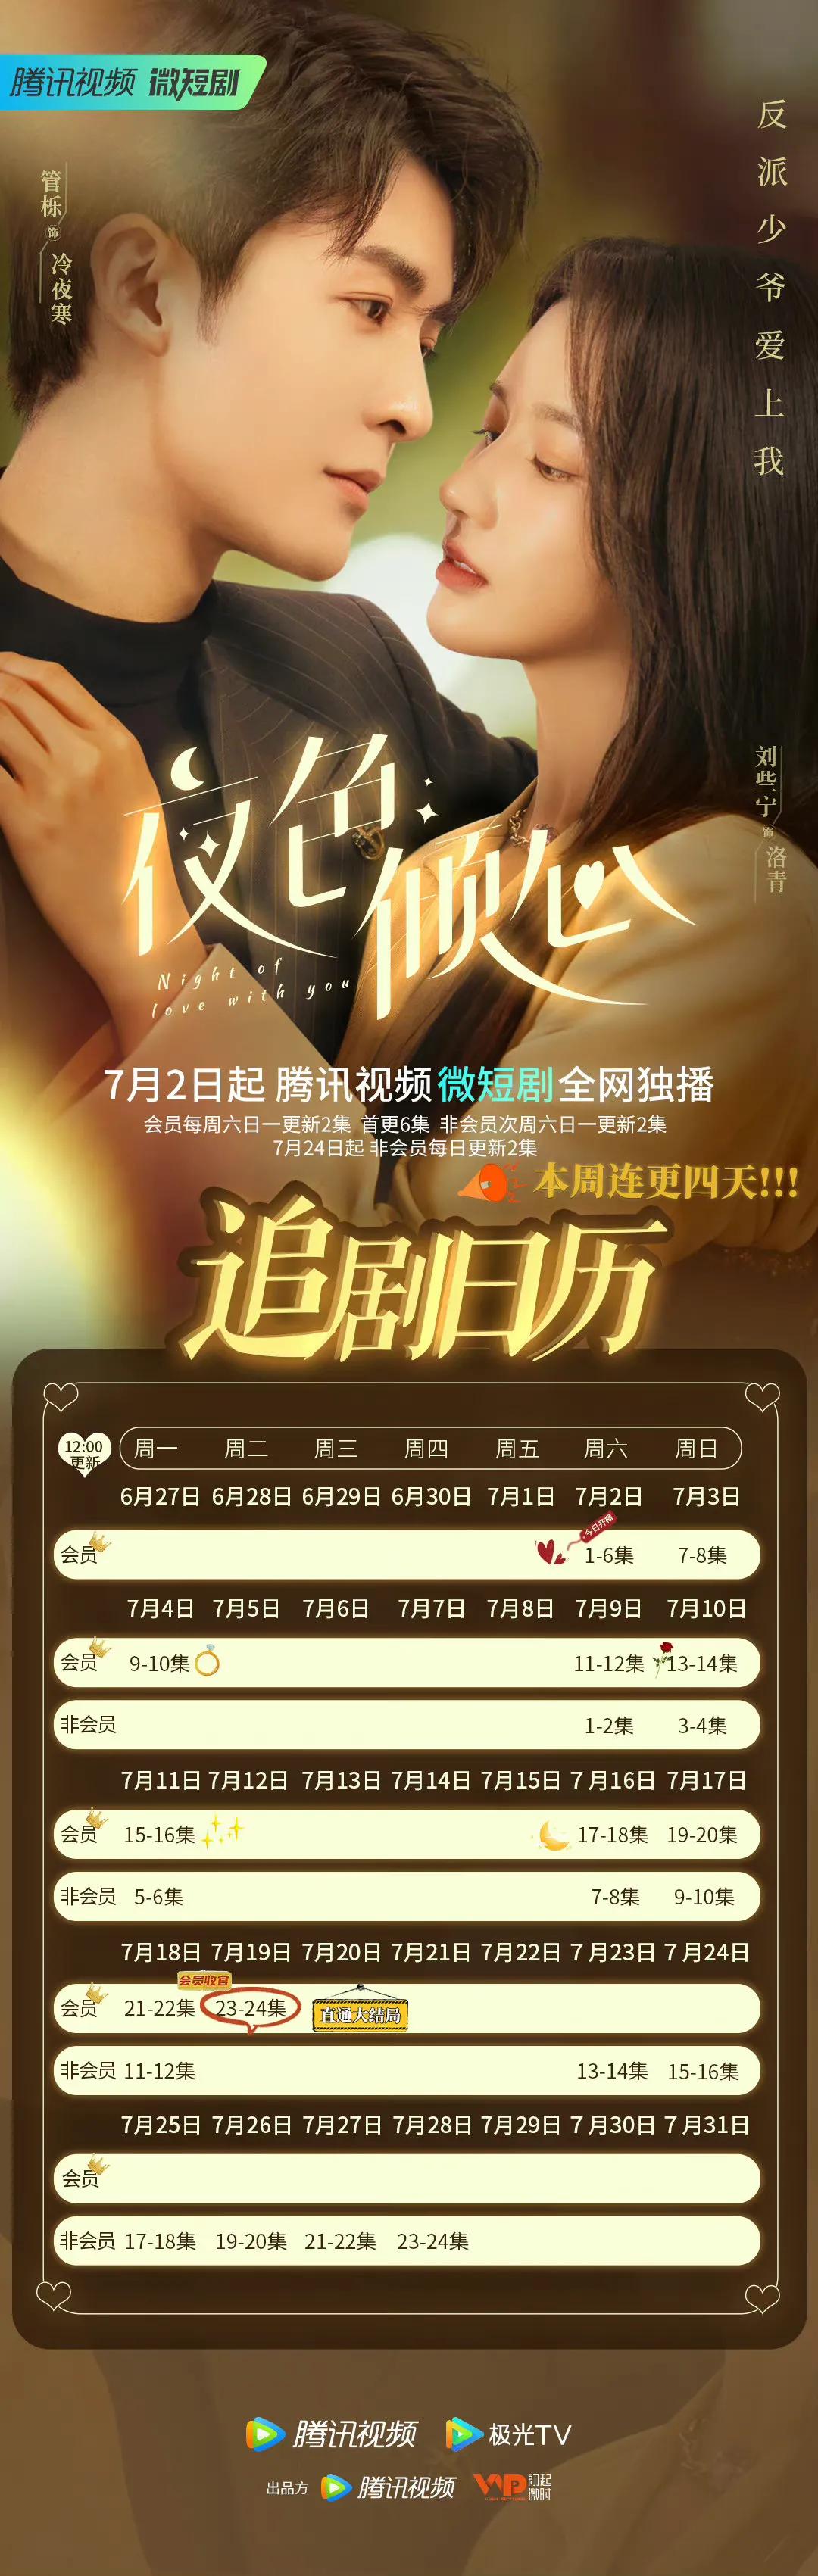 7.15剧：古力娜扎、徐开骋领衔主演的《恋恋红尘》今日官宣杀青